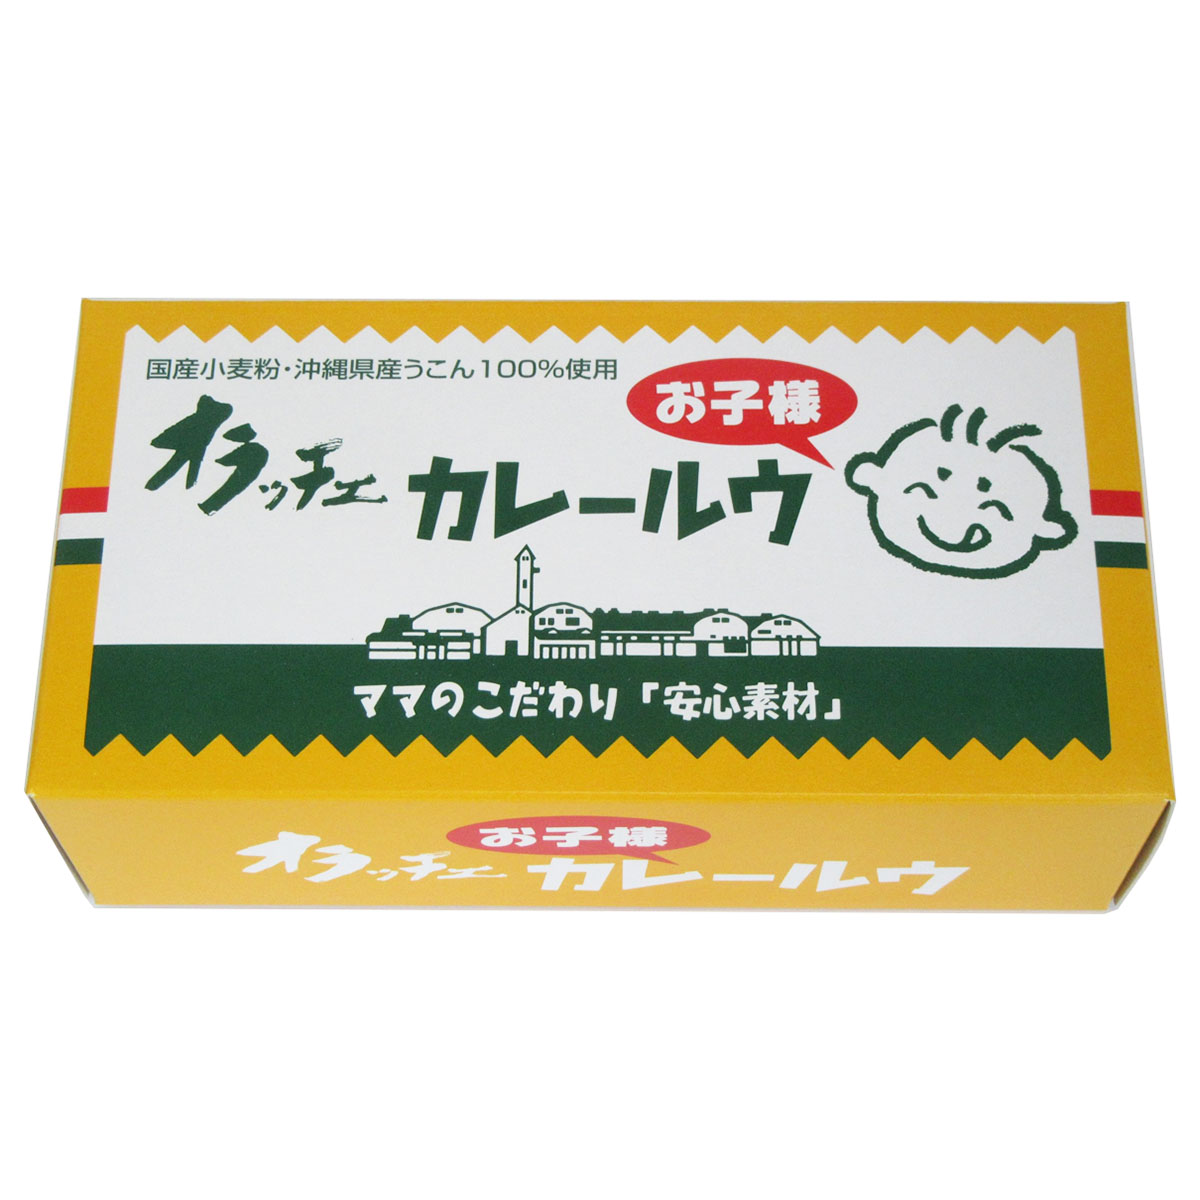 無添加 オラッチェ お子様カレールウ 230g（115g×2パック）国産小麦粉 沖縄県産うこん100%使用